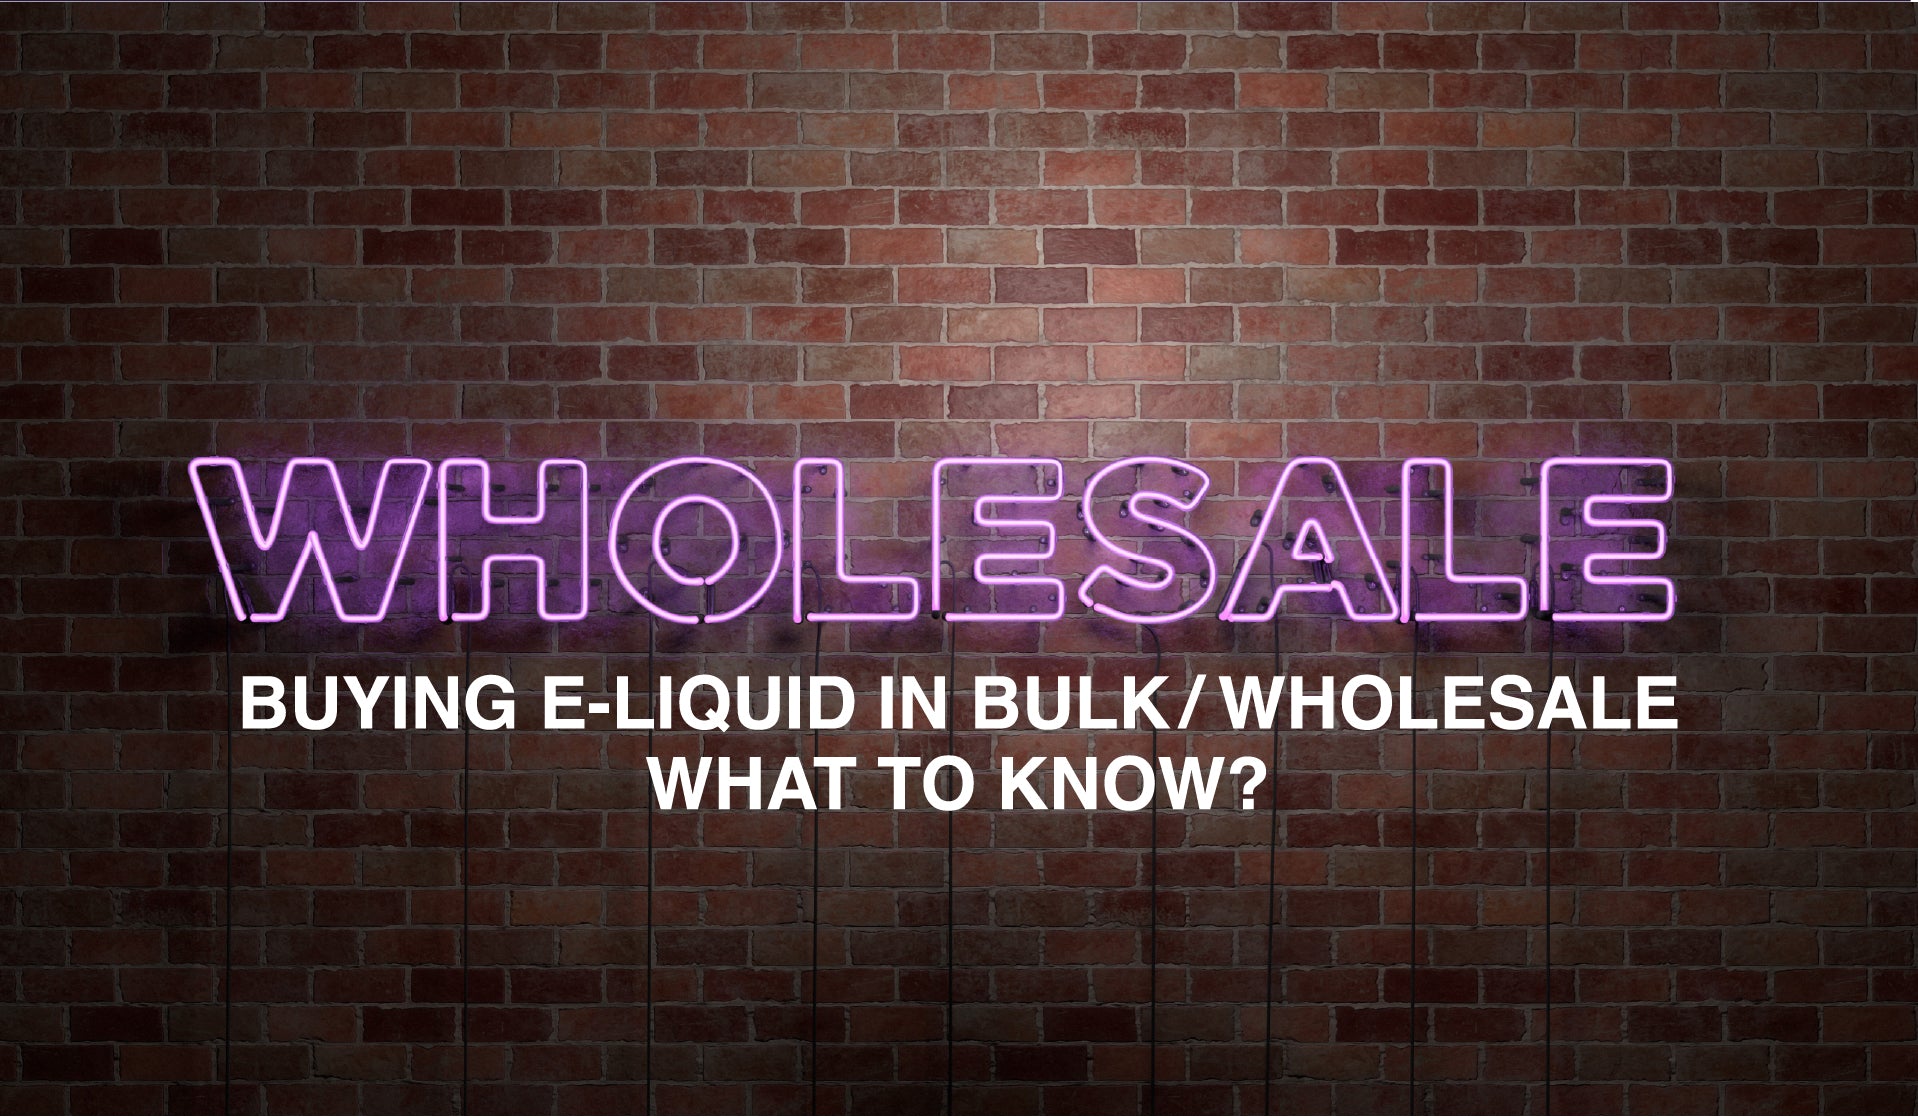 ¿Qué saber al comprar E-Liquid al por mayor?